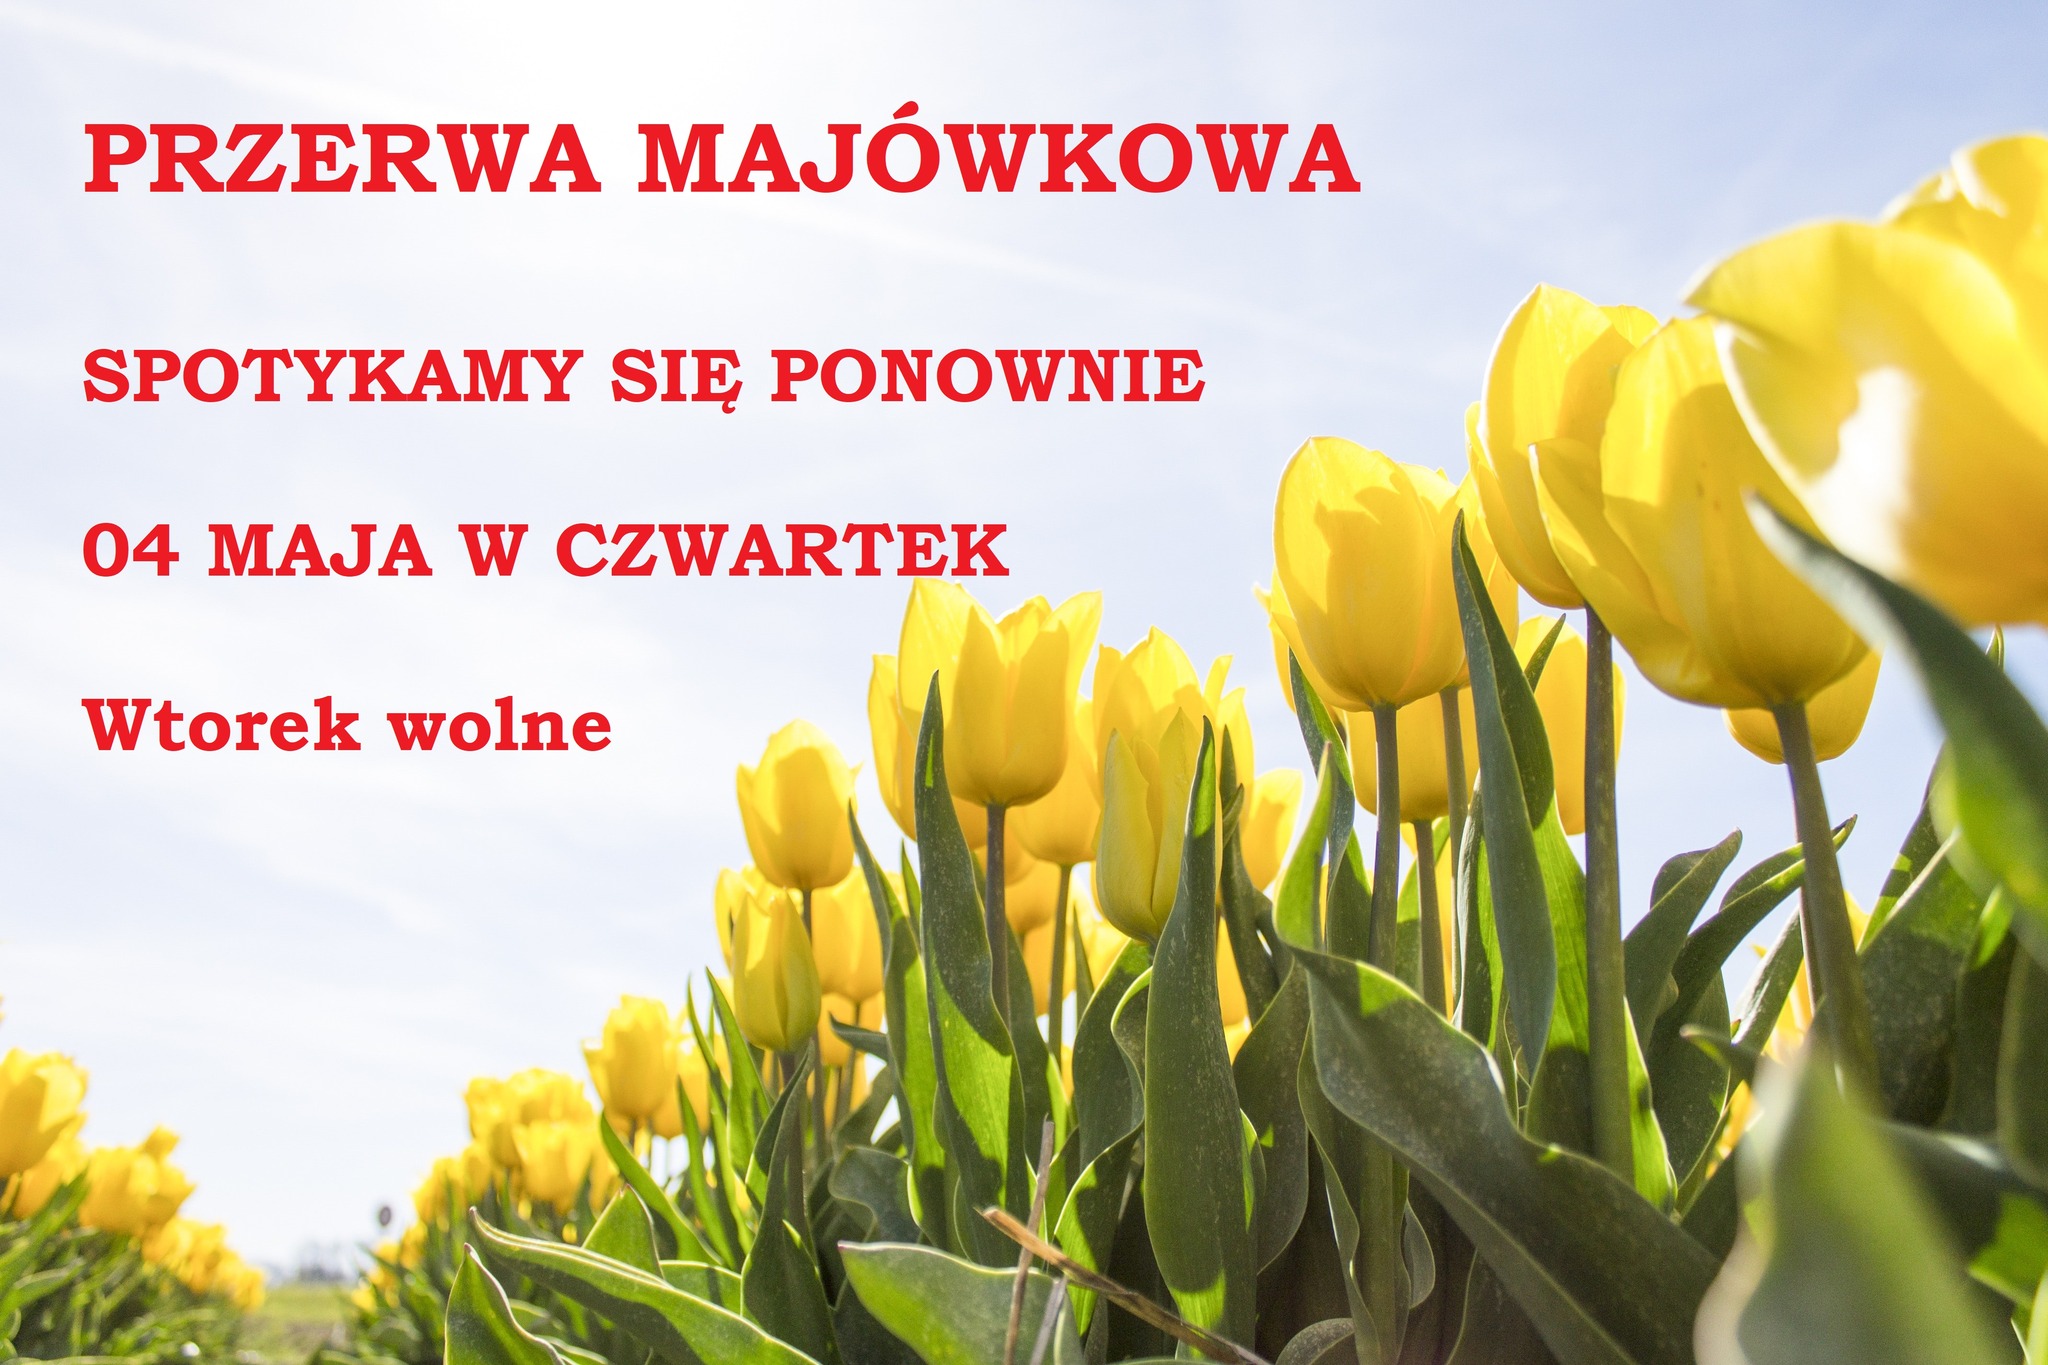 You are currently viewing PRZERWA MAJÓWKOWA